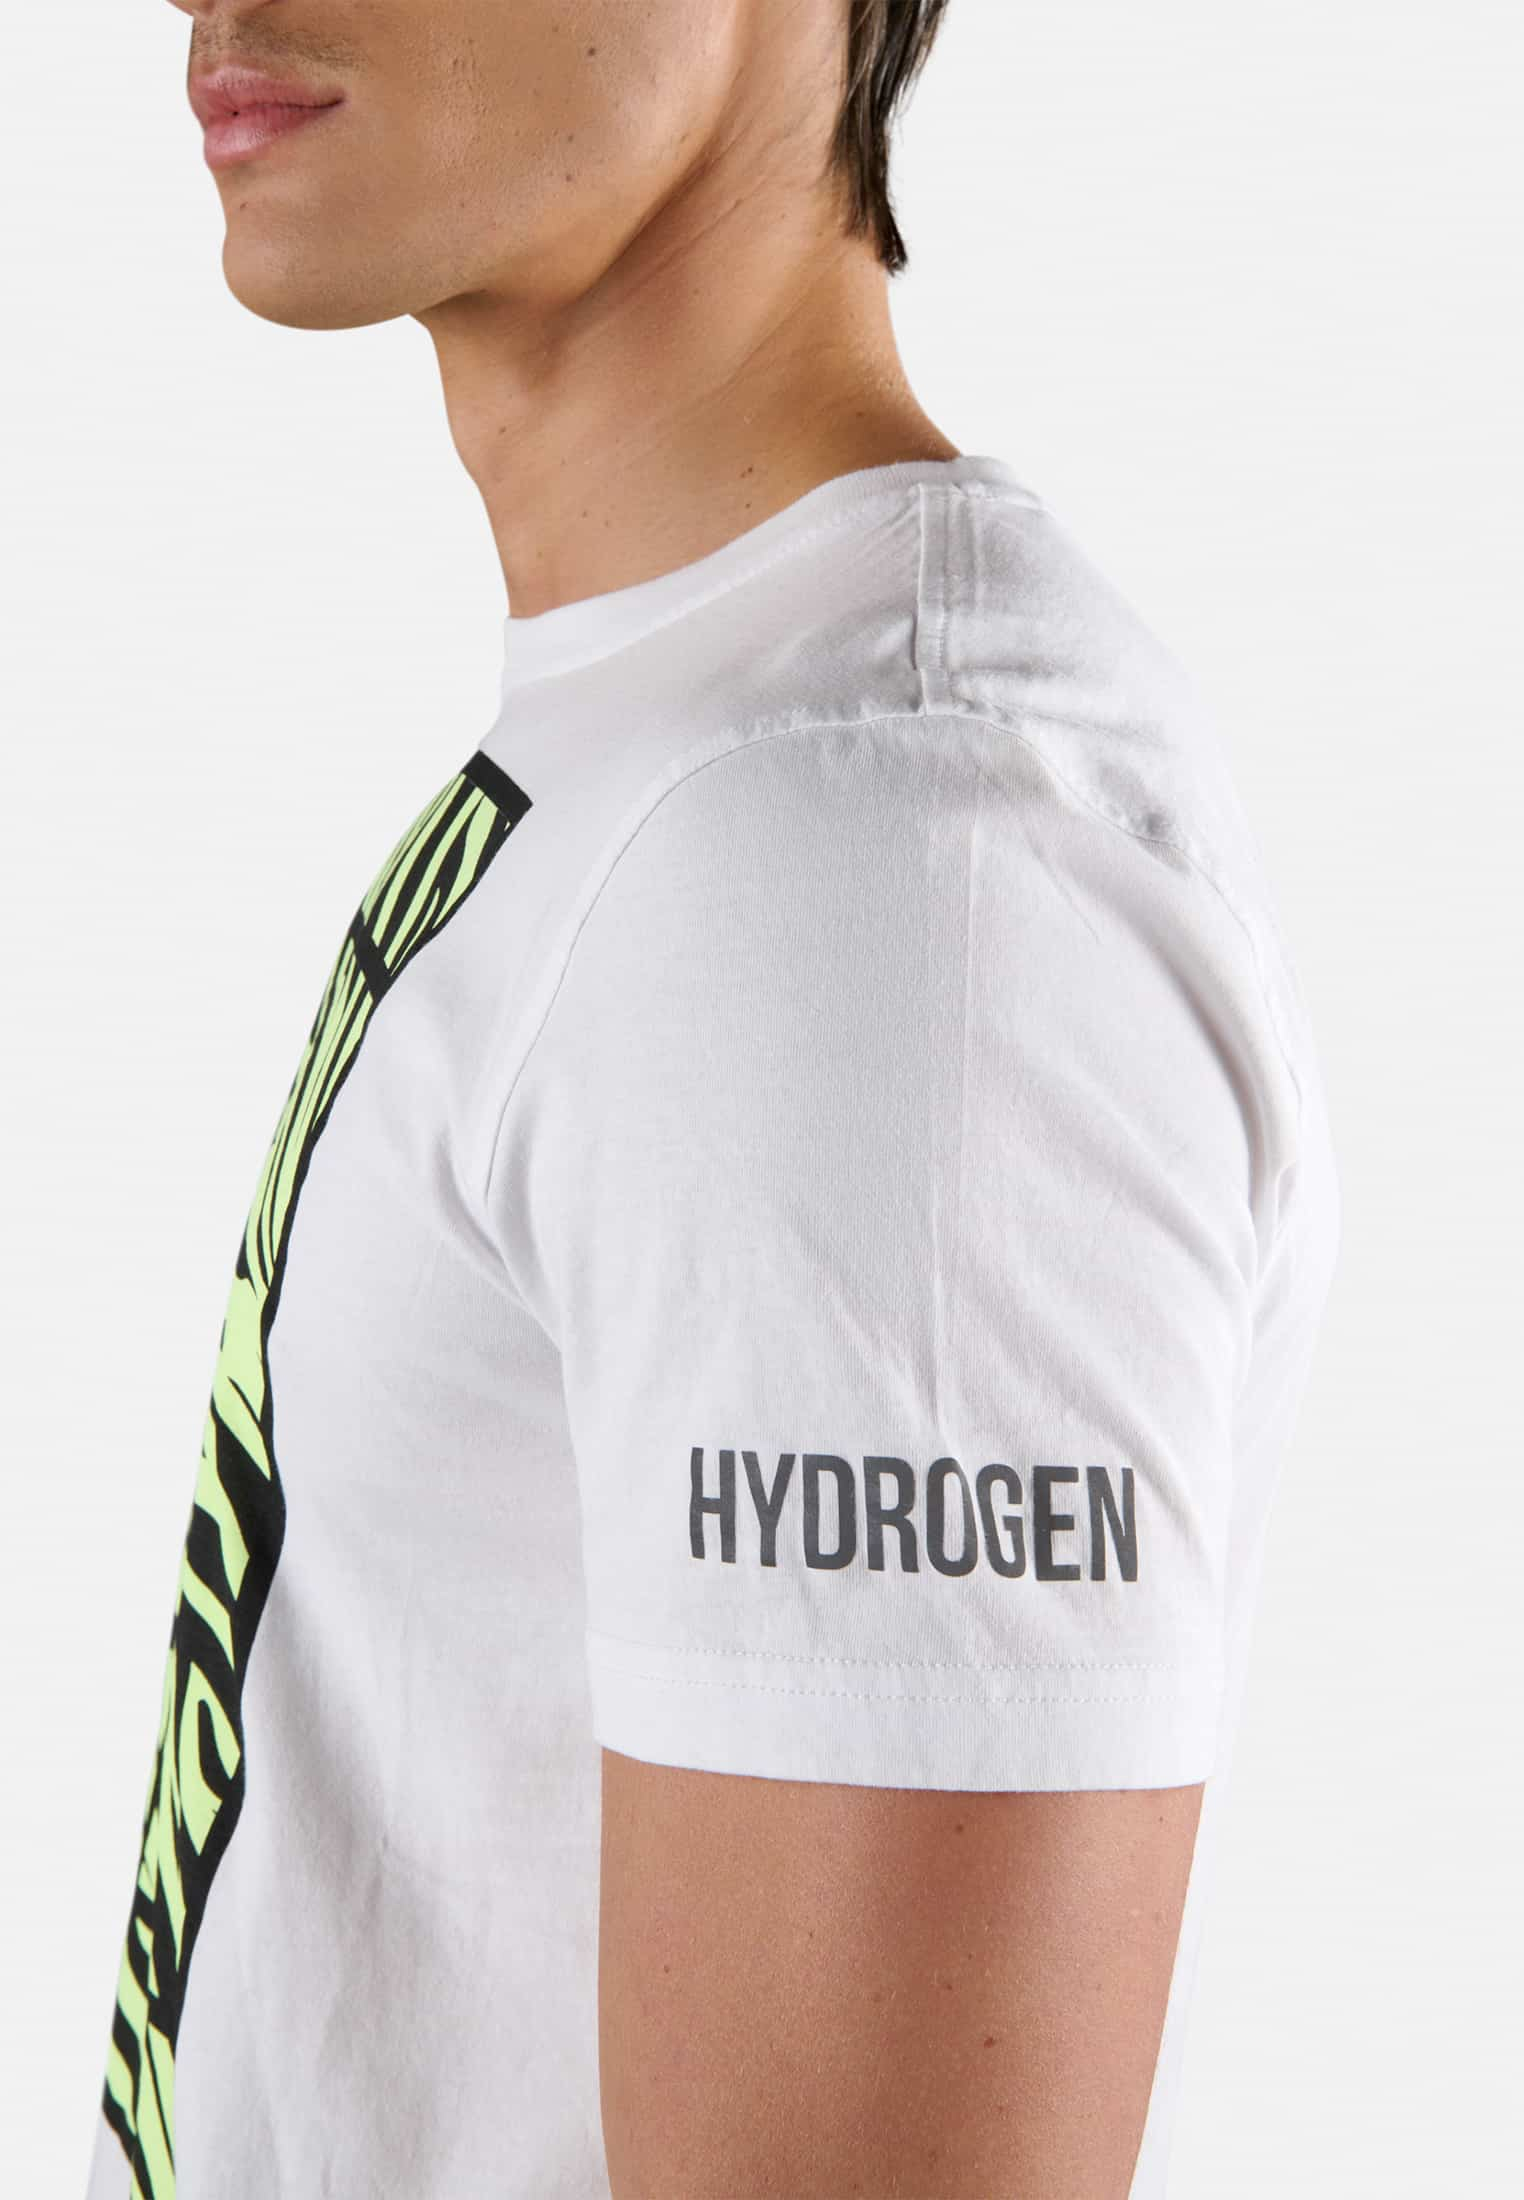 T-SHIRT IN COTONE COURT - Outlet Hydrogen - Abbigliamento sportivo